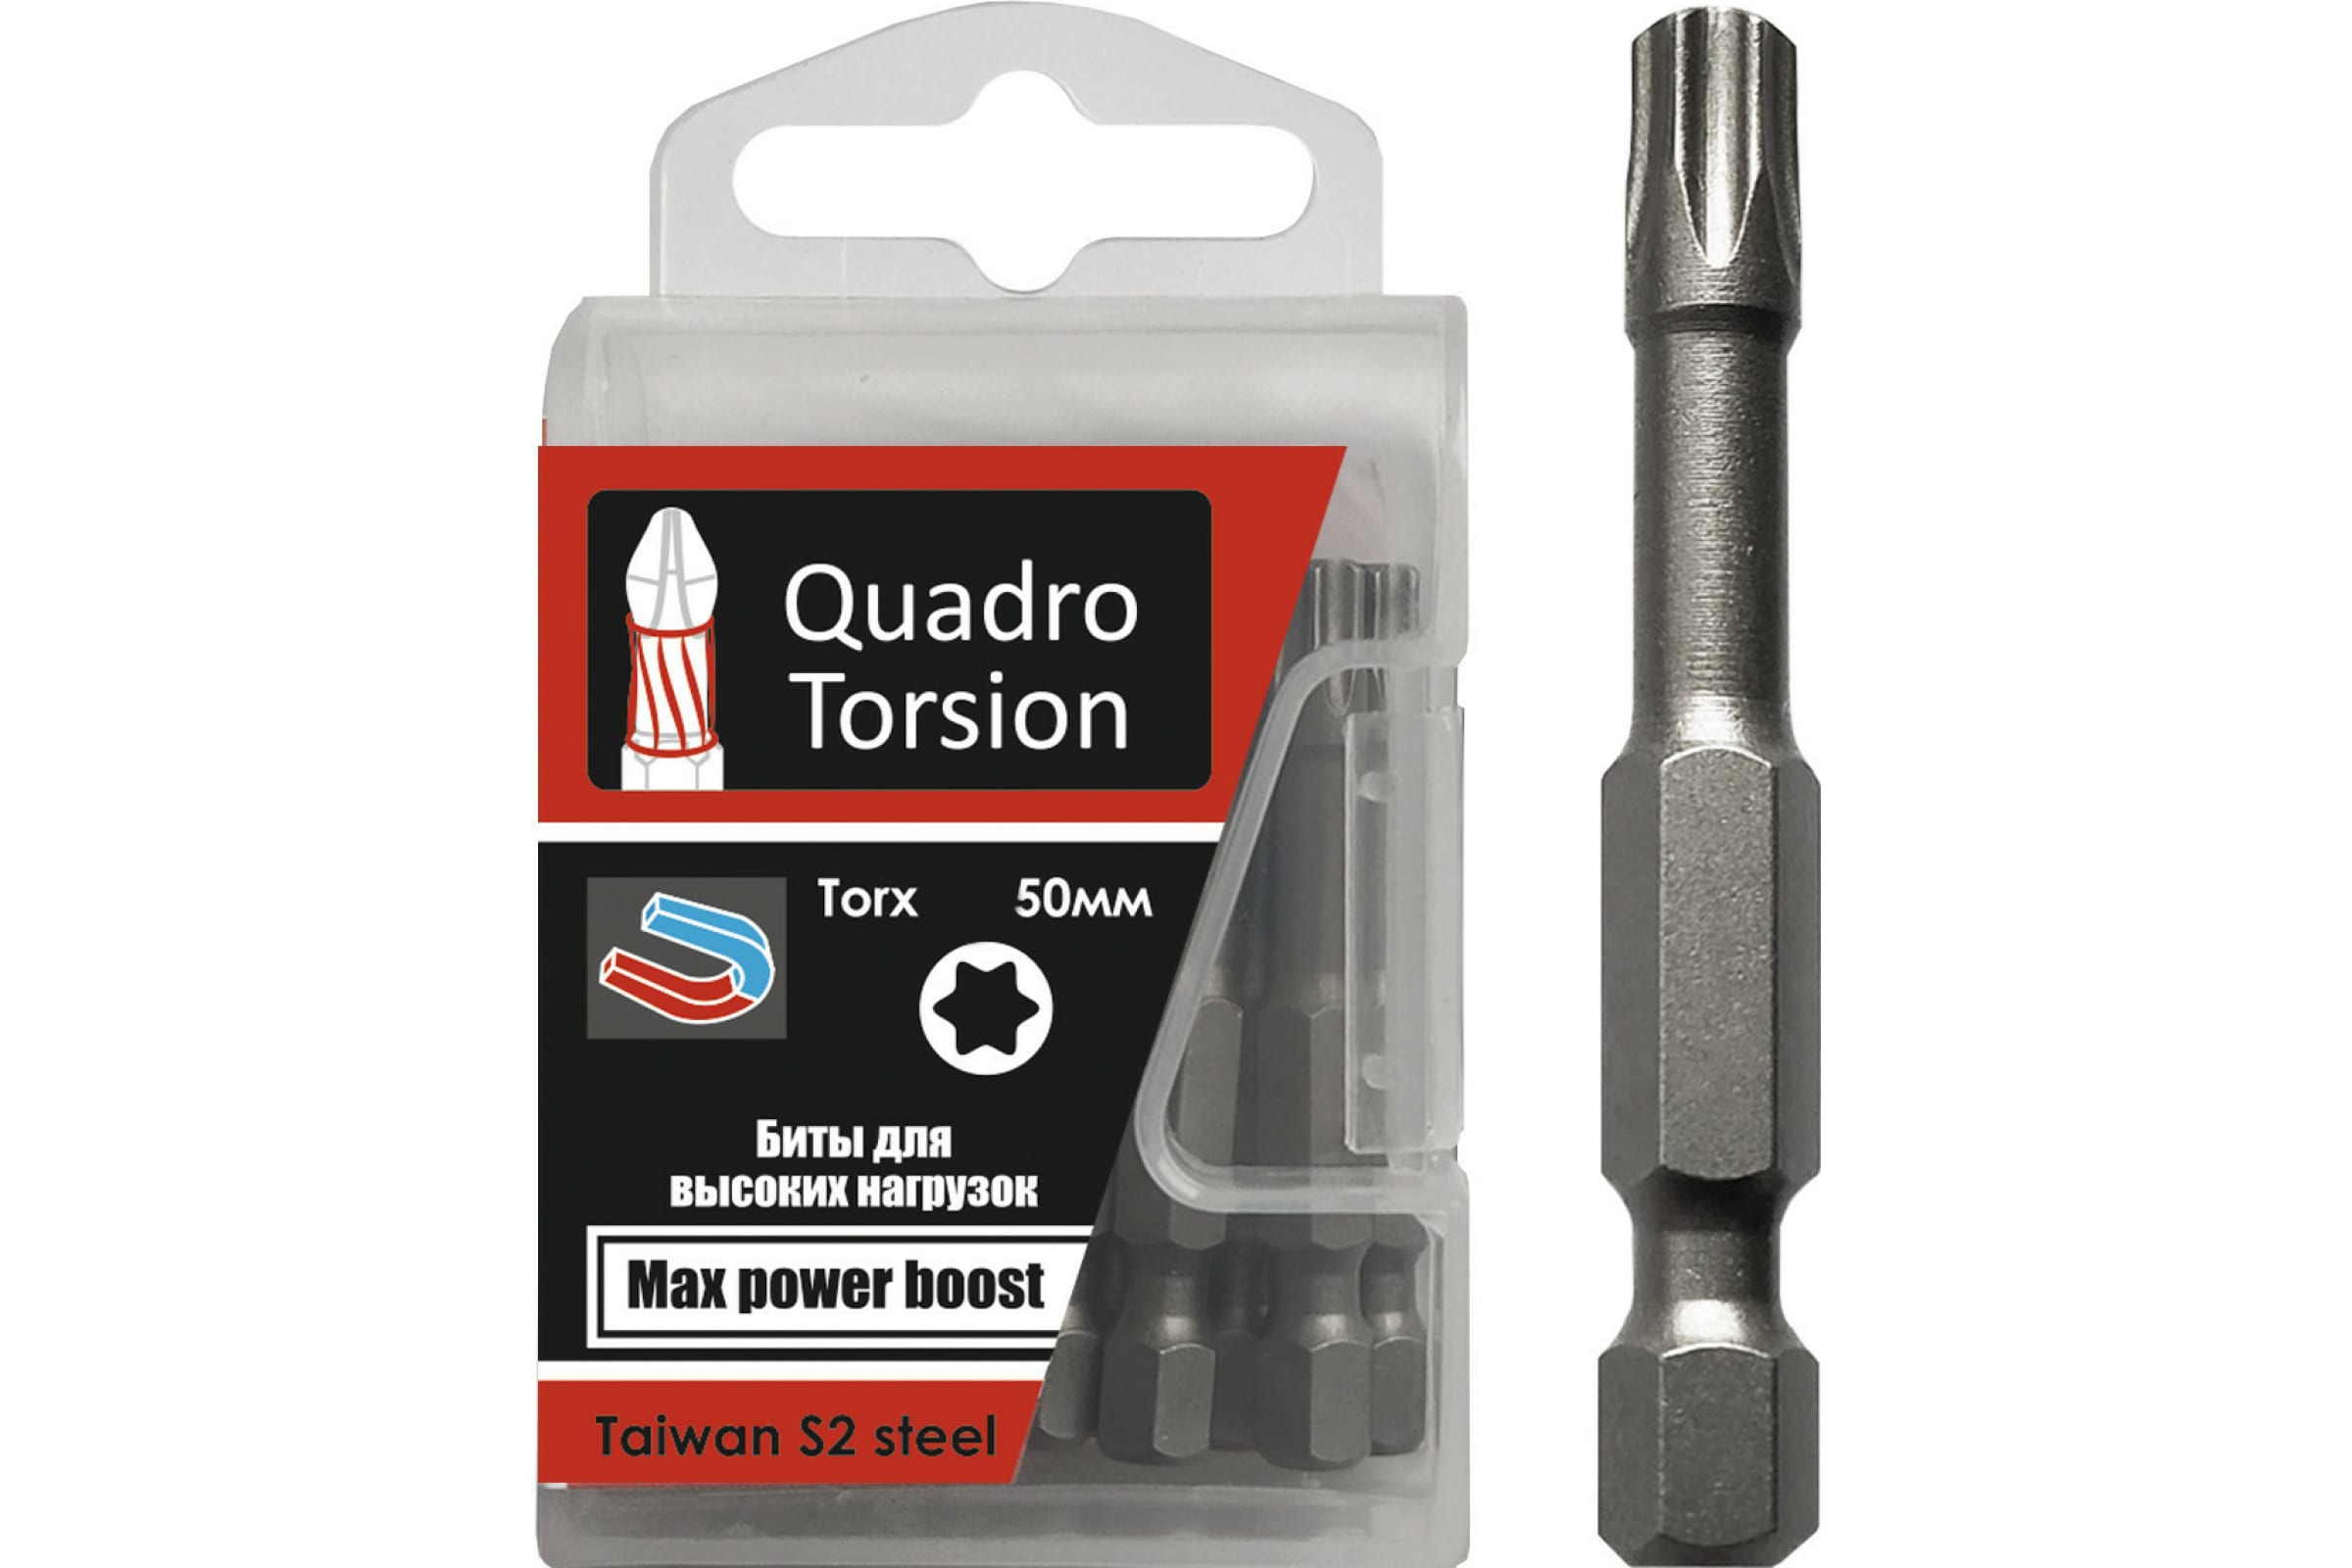 Quadro Torsion бита 1/4 25-50мм Torx 10 шт./кор. 432550 бита torx 10 шт t25 50 мм 1 4 quadro torsion 432550